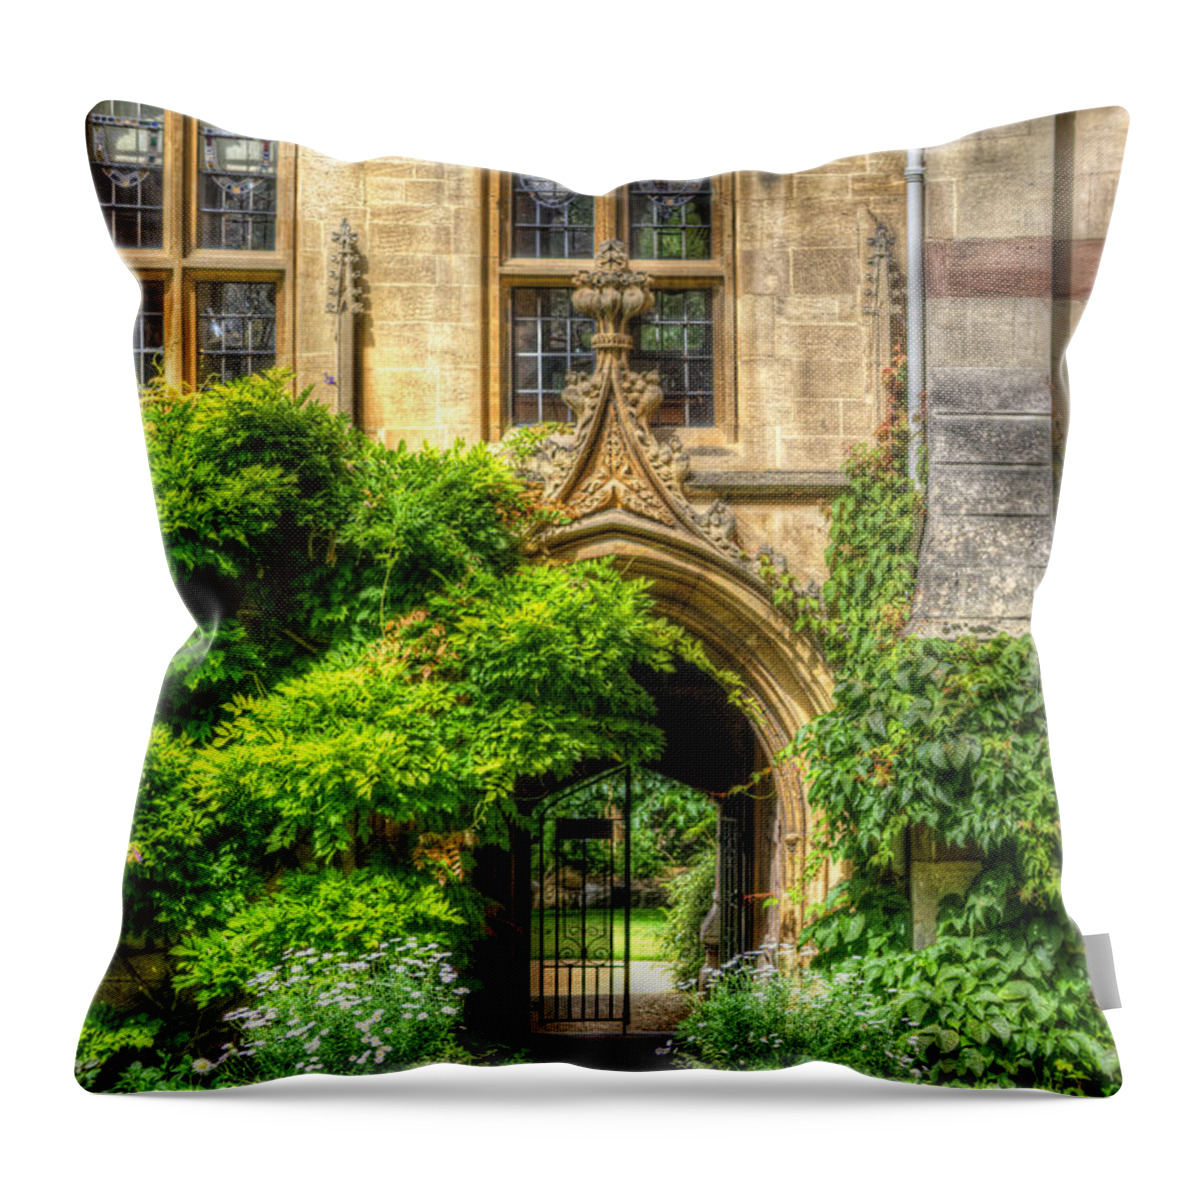 Yhun Suarez Throw Pillow featuring the photograph College Garden by Yhun Suarez